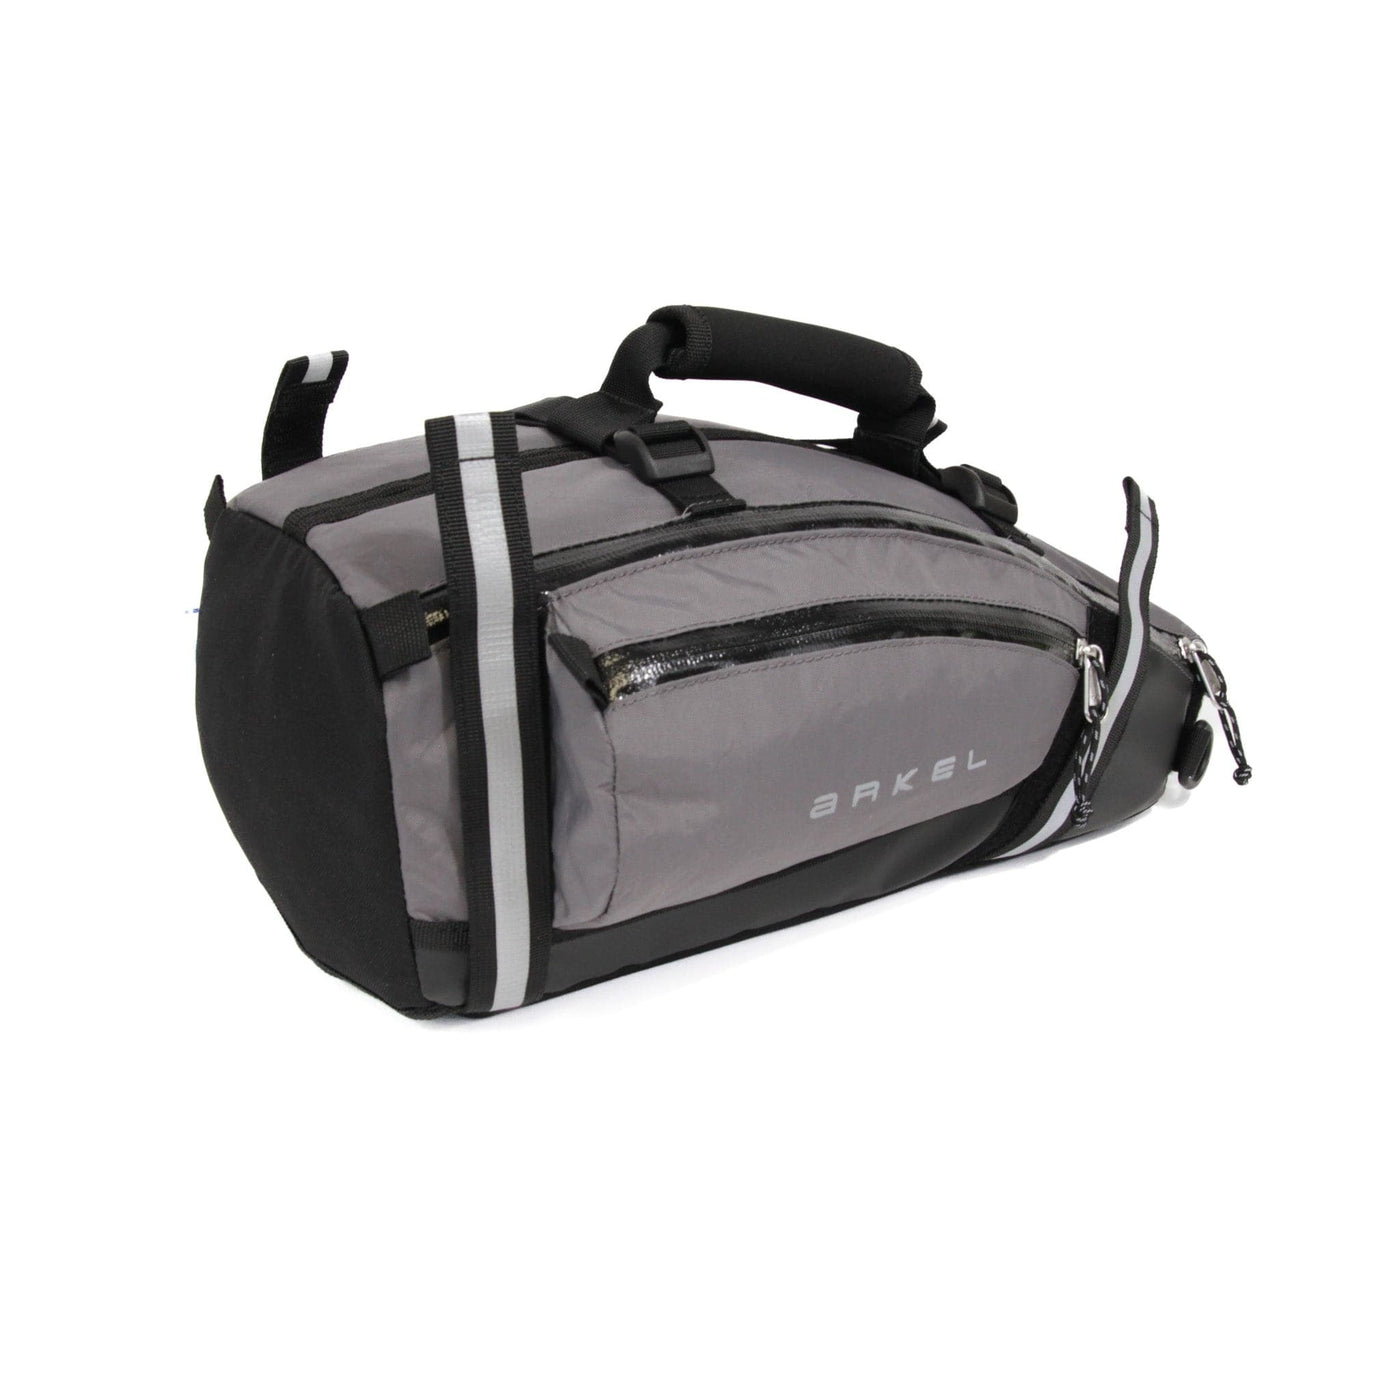 TailRider - Trunk Bag